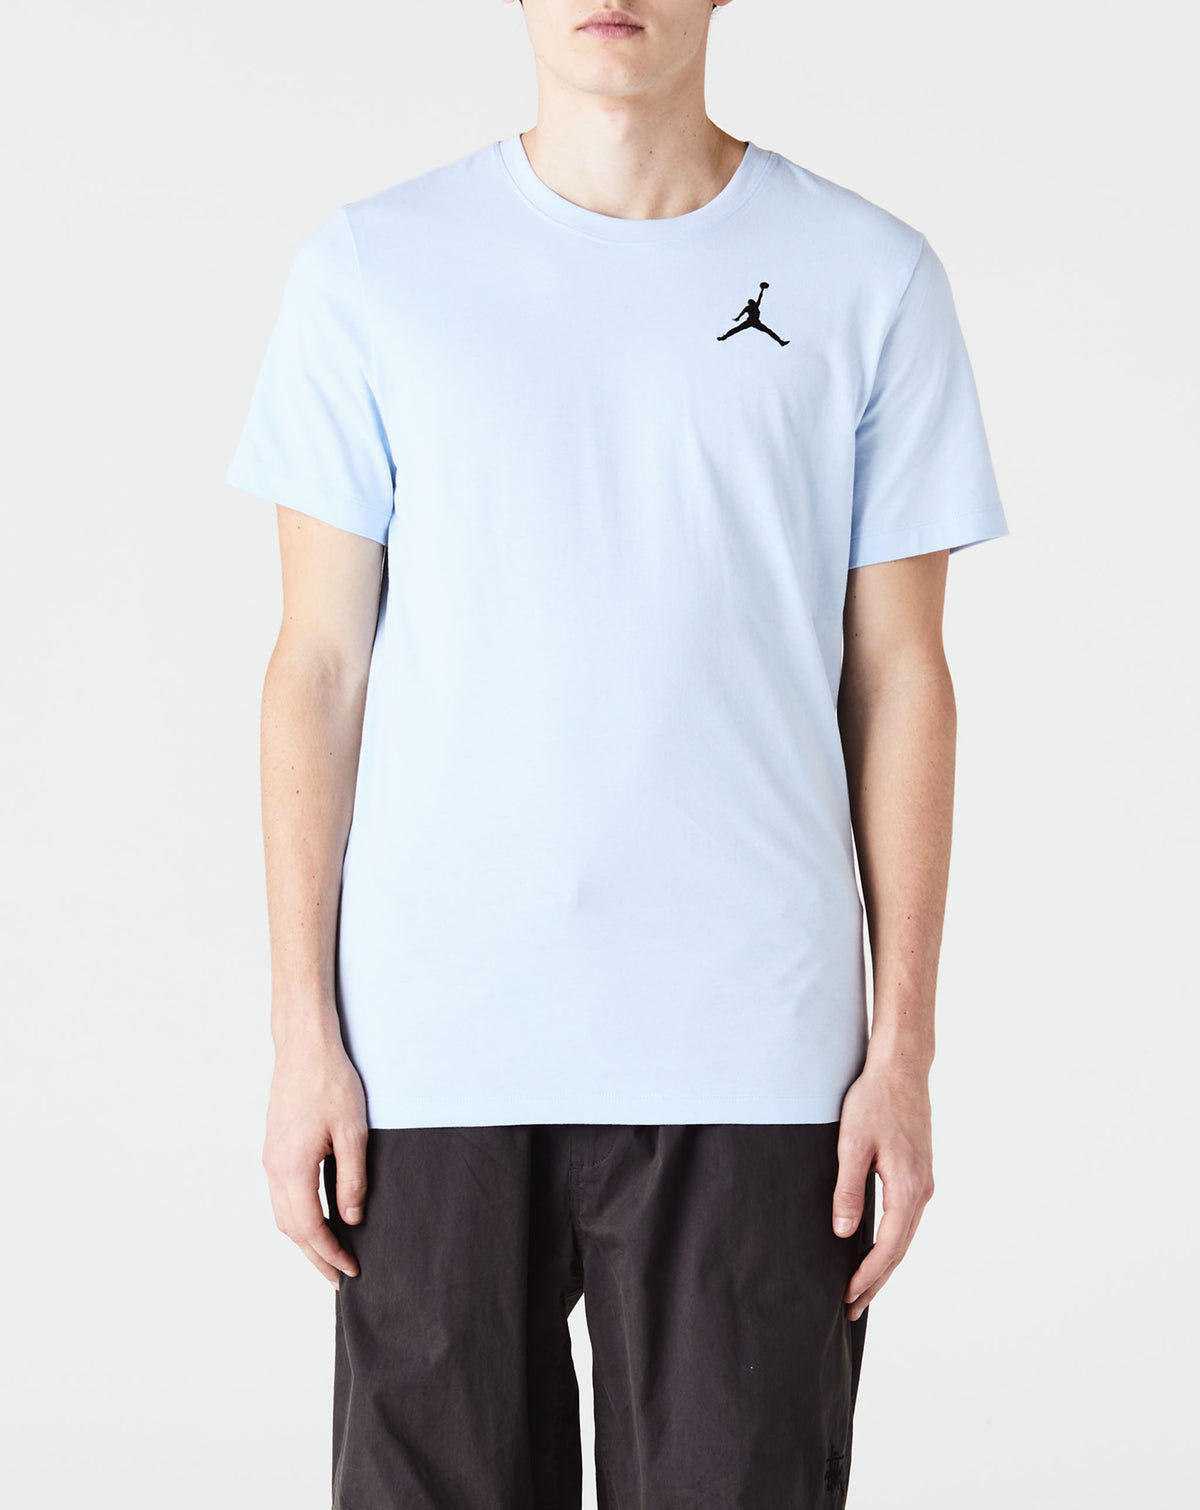 Air Jordan Jumpman T-Shirt - Rule of Next Apparel